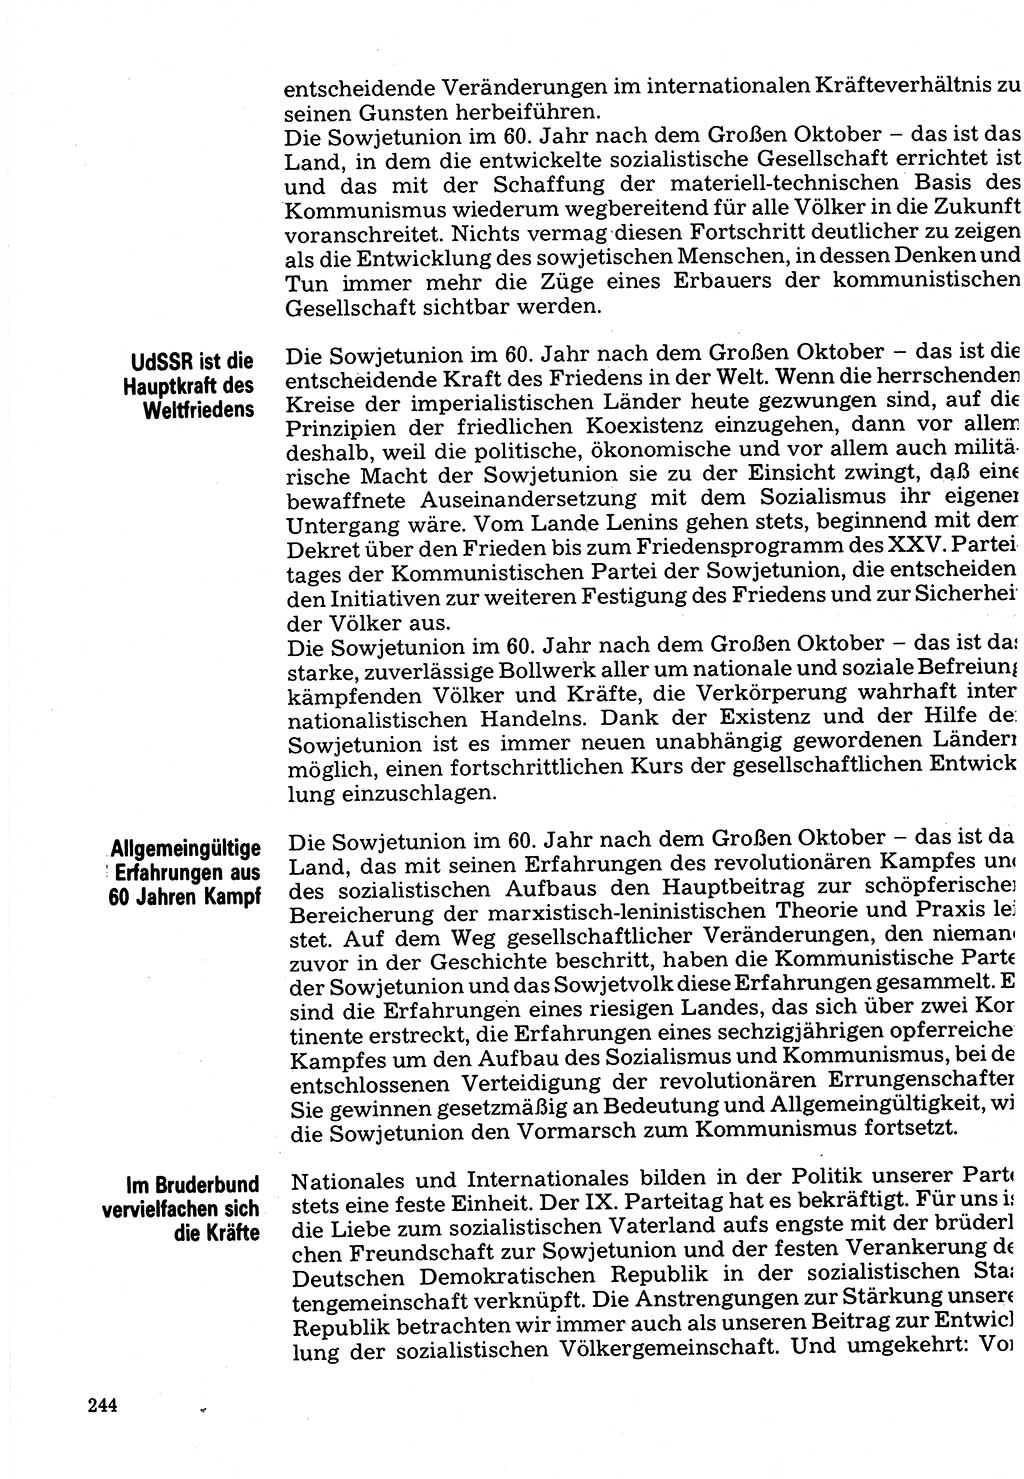 Neuer Weg (NW), Organ des Zentralkomitees (ZK) der SED (Sozialistische Einheitspartei Deutschlands) für Fragen des Parteilebens, 32. Jahrgang [Deutsche Demokratische Republik (DDR)] 1977, Seite 244 (NW ZK SED DDR 1977, S. 244)